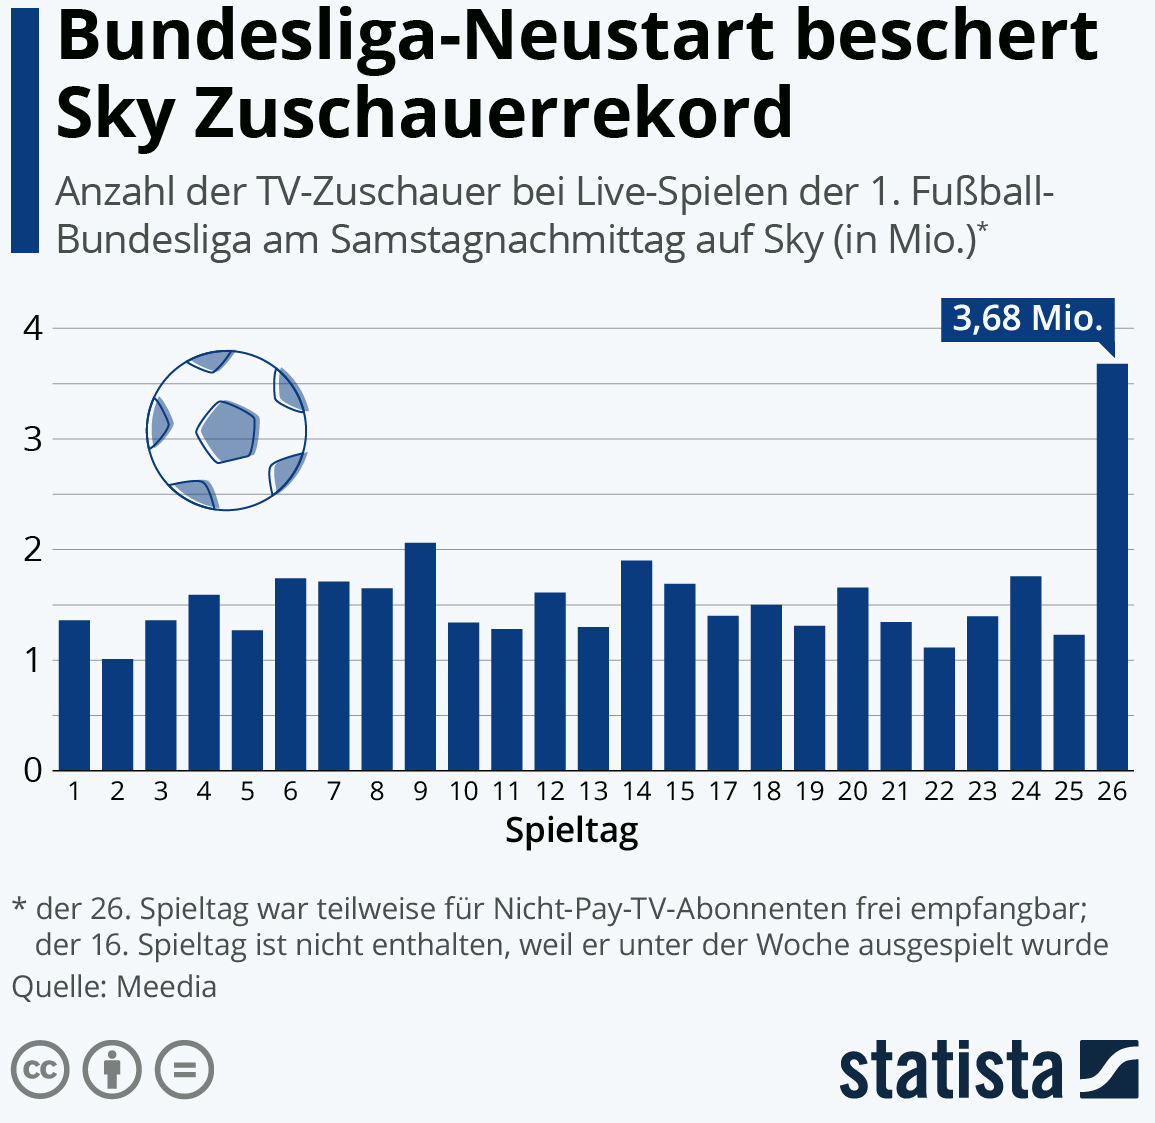 Rund 3,7 Millionen Fernseh-ZuschauerInnen haben laut Meedia auf Sky die Samstagnachmittagsspiele der 1. Fußball-Bundesliga verfolgt